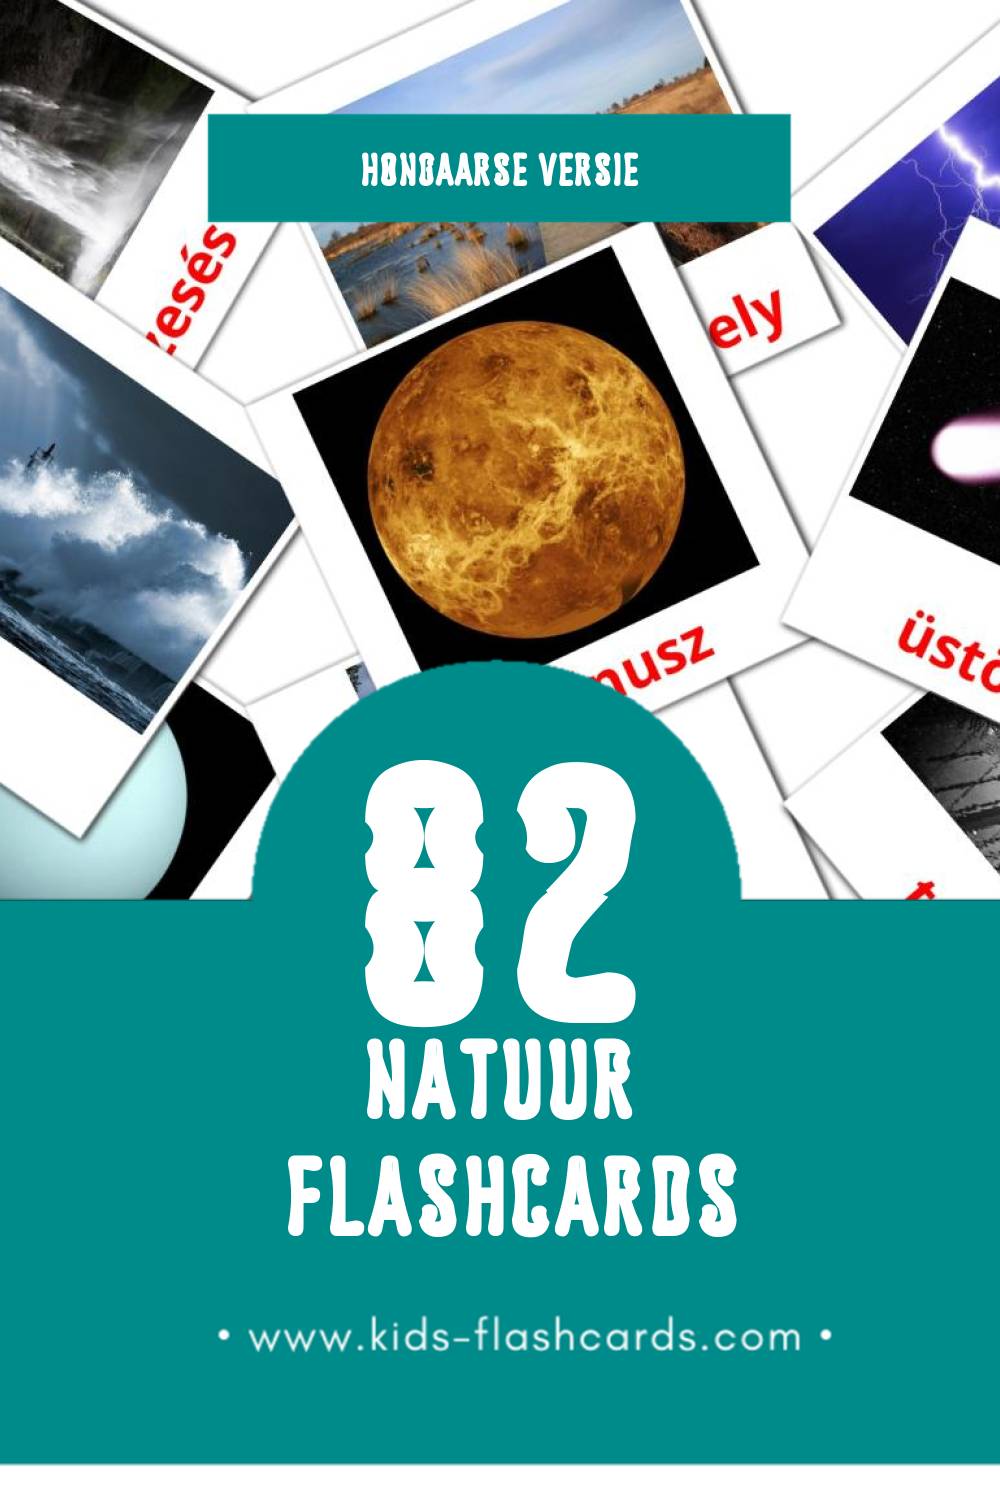 Visuele Természet Flashcards voor Kleuters (82 kaarten in het Hongaars)